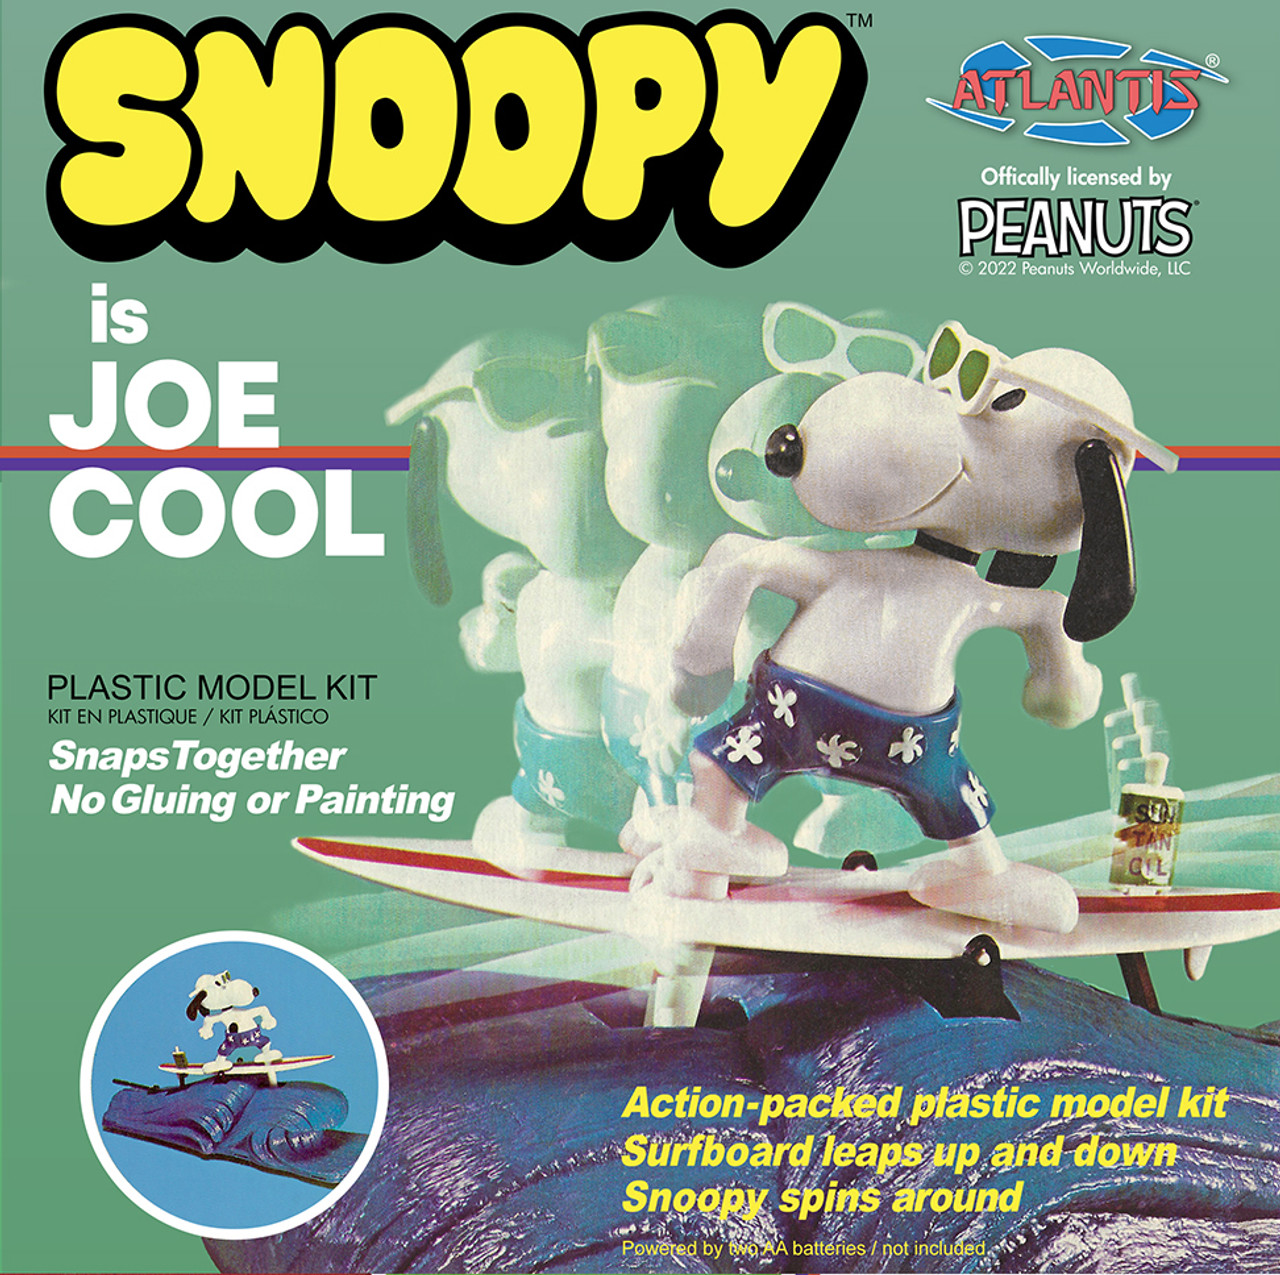 atlantis-M5702-1-Snoopy-is-Joe-Cool-surfing-around